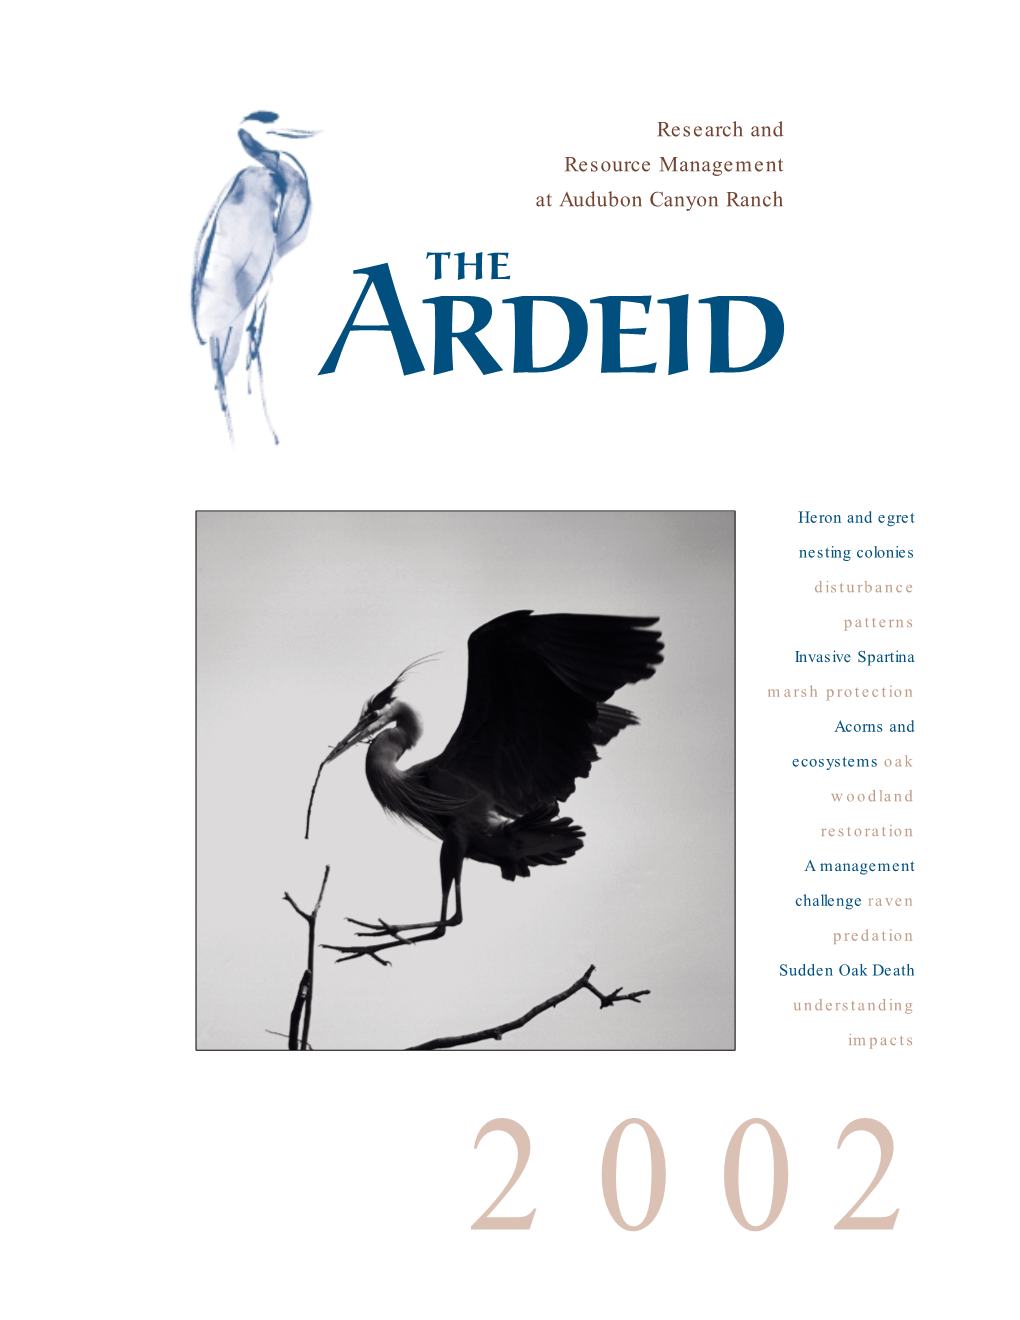 2002 the ARDEID 2002